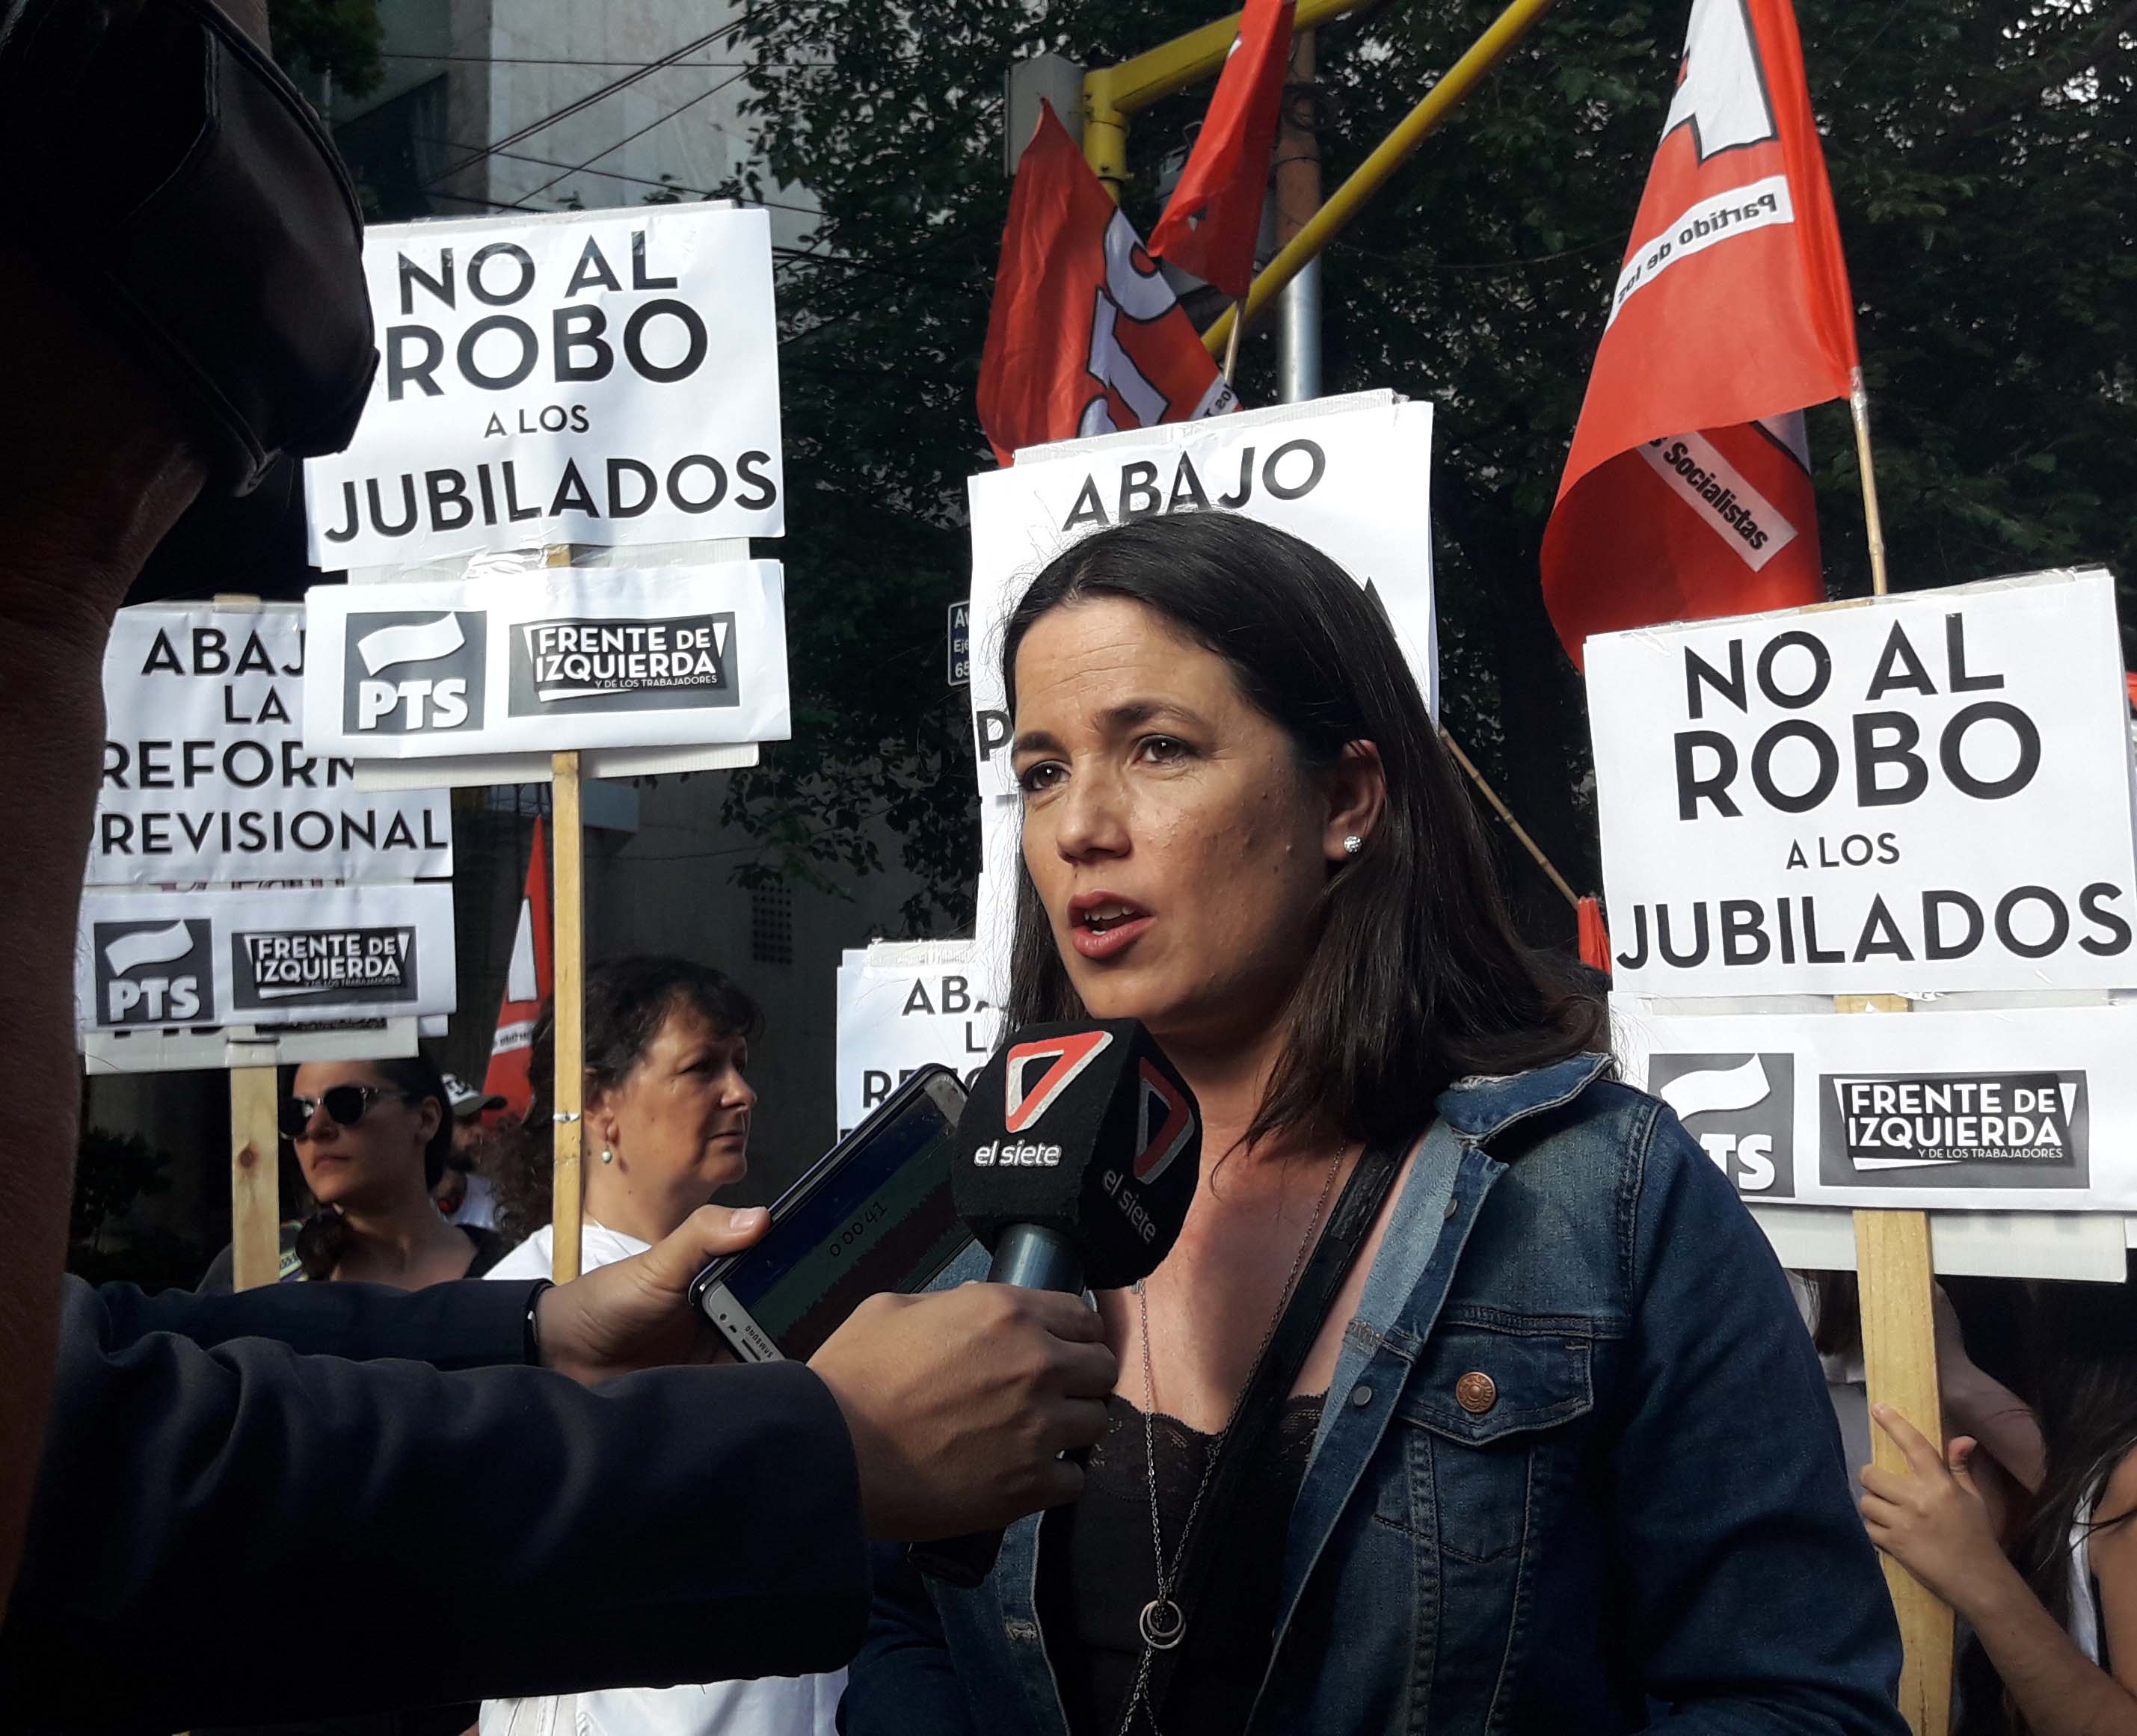 Barbeito: "Se demostró que Macri no tiene la fuerza ni mayoría para imponer este robo a los jubilados"